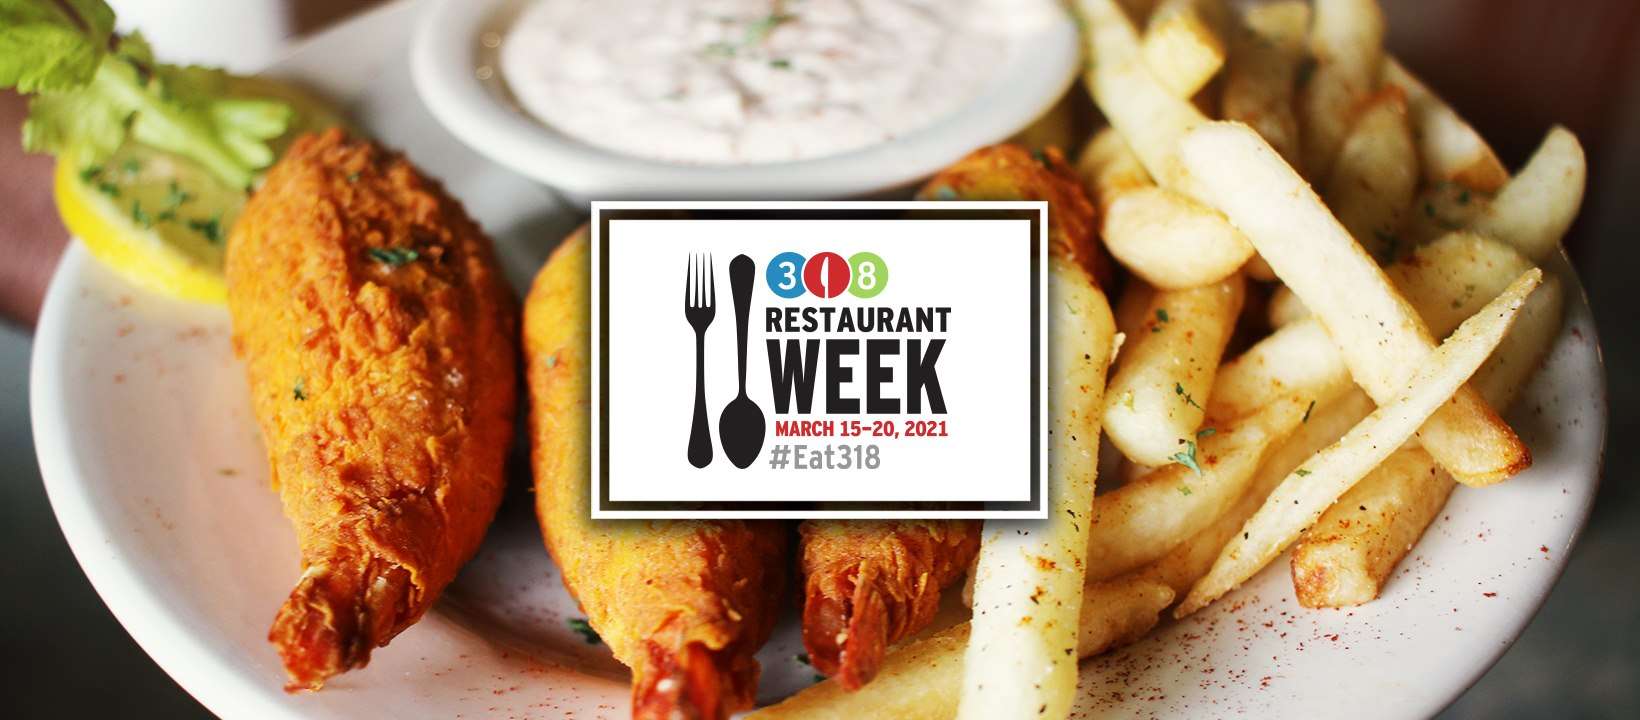 318 Restaurant Week returns March 15-20